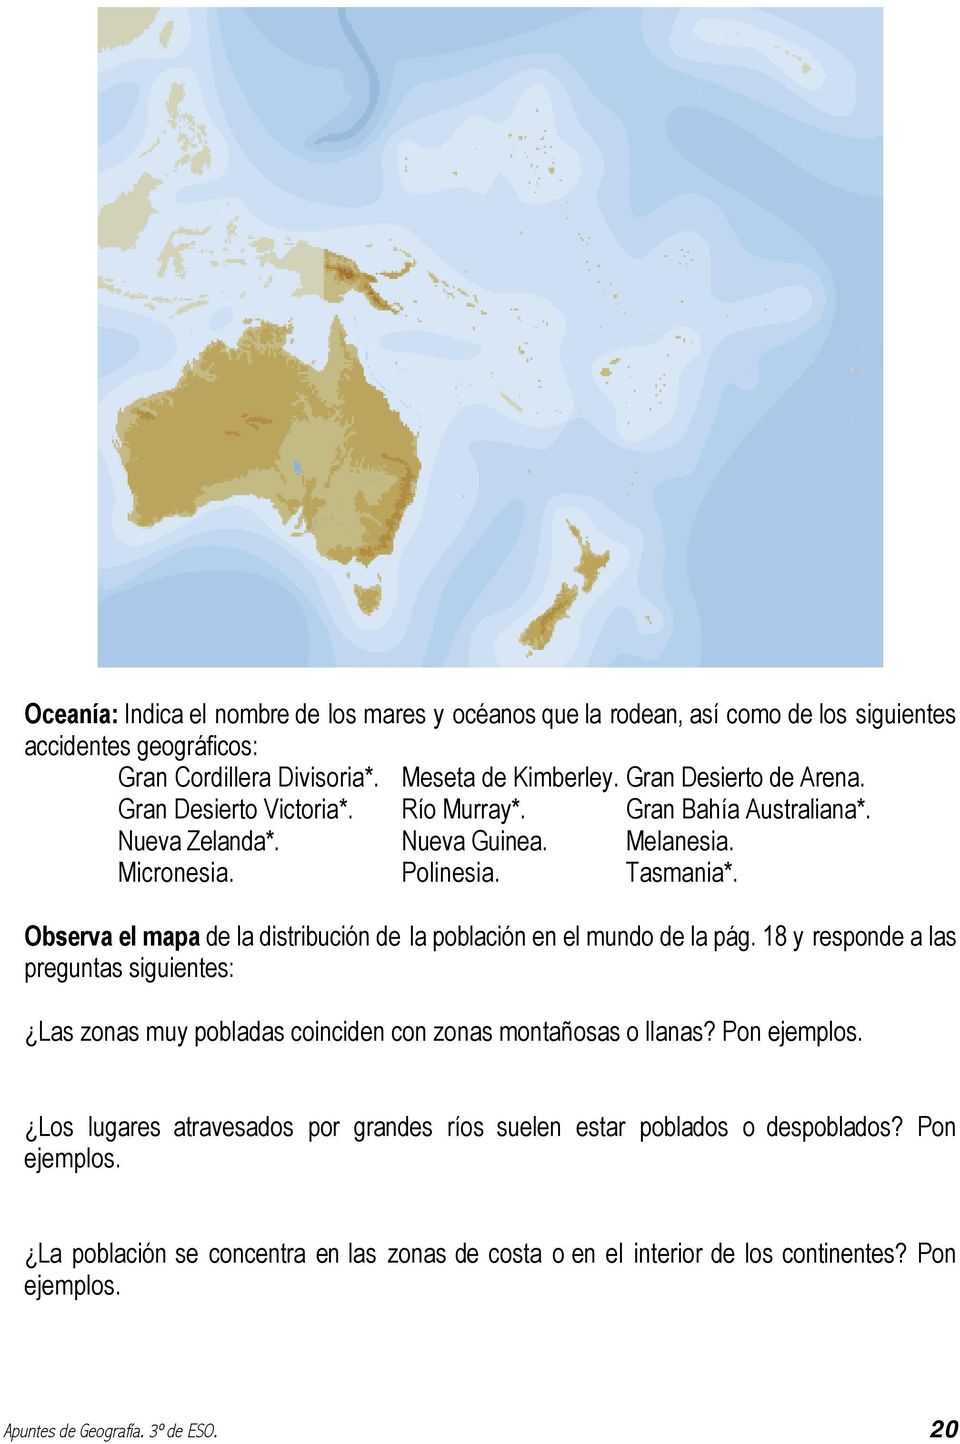 Observa el mapa de la distribución de la población en el mundo de la pág. 18 y responde a las preguntas siguientes: Las zonas muy pobladas coinciden con zonas montañosas o llanas?